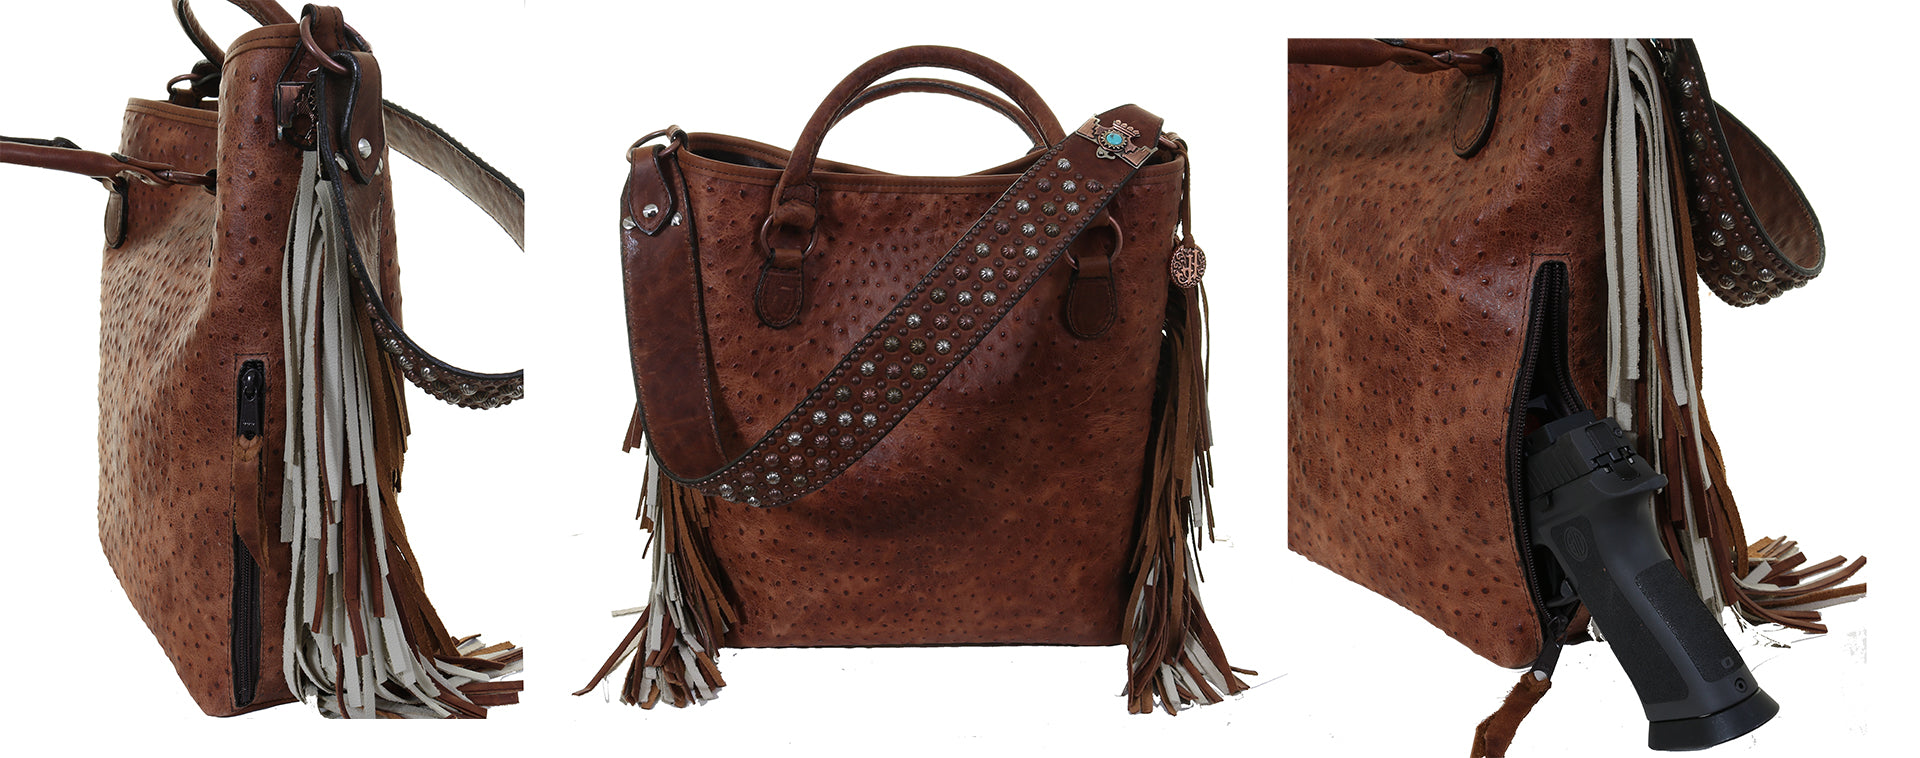 Jaguar Bags & Handbags for Women | eBay